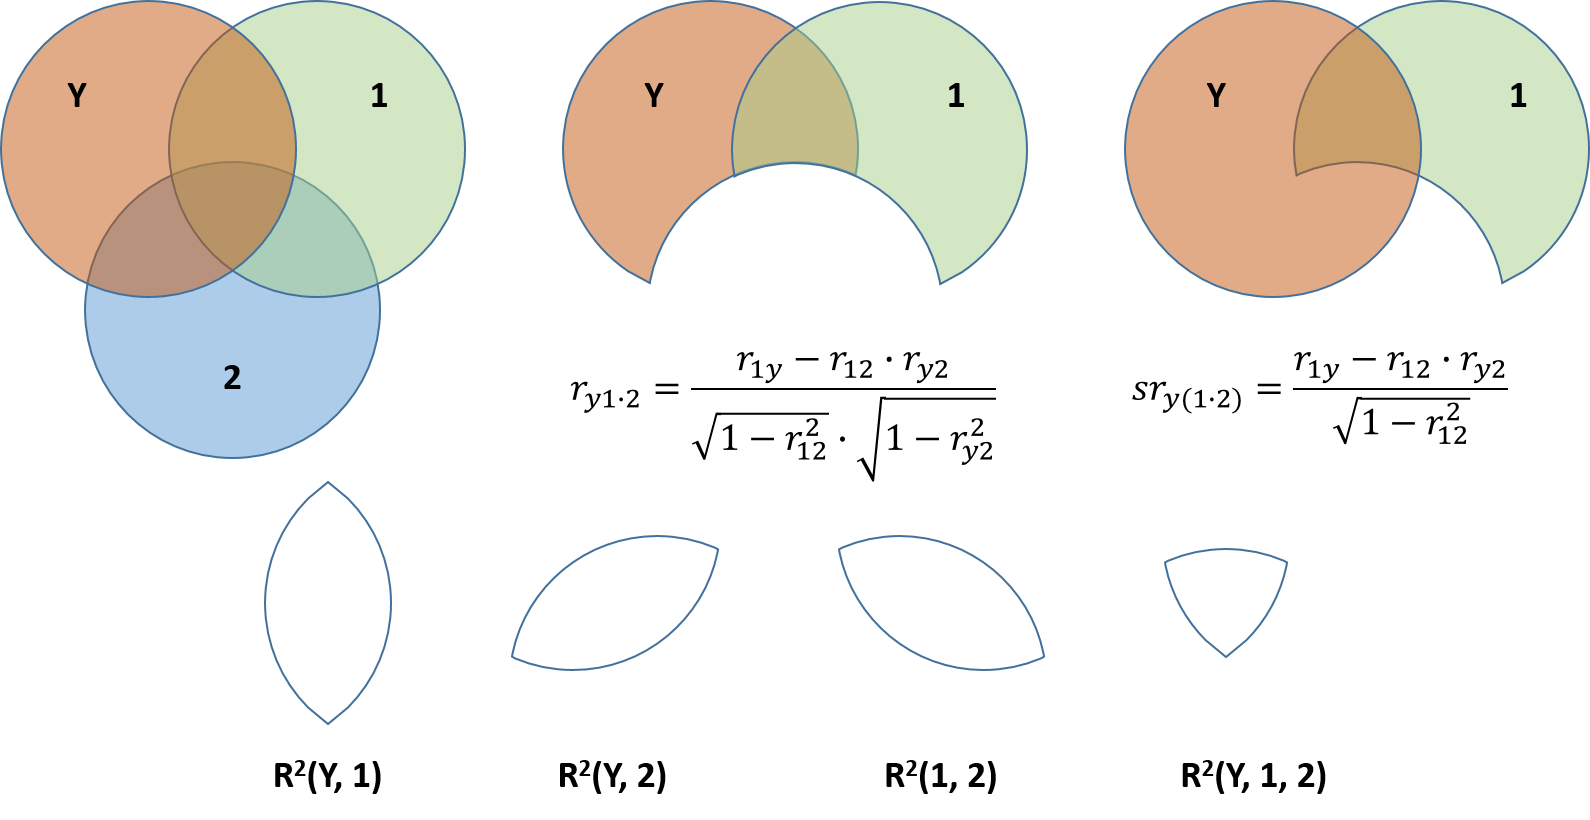 Abbildung 10: Partial und Semipartialkorrelation in einem Venn-Diagramm dargestellt